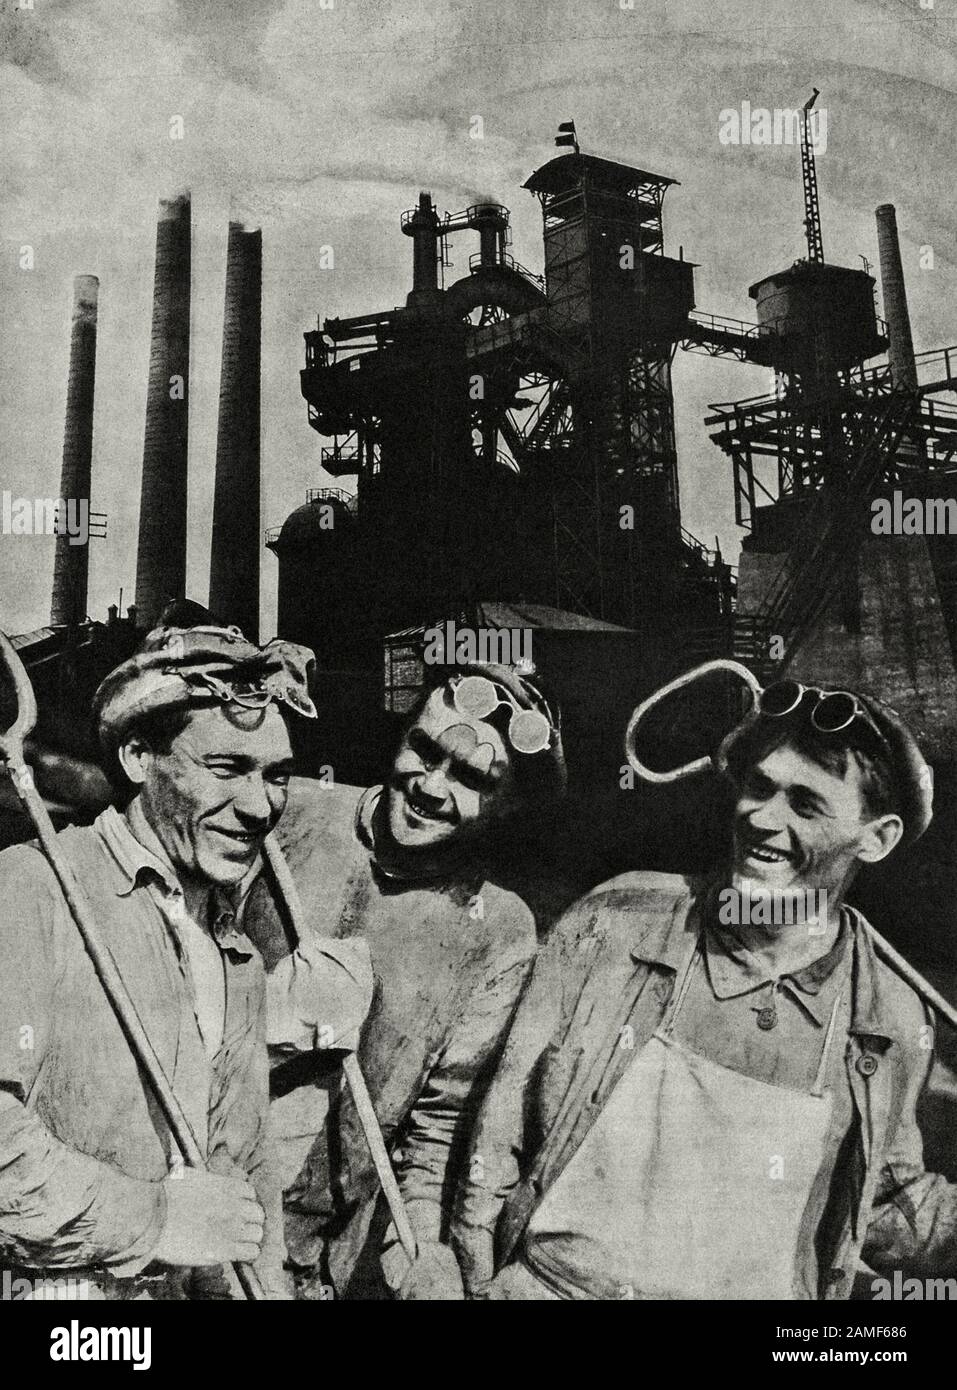 Das Leben in der Sowjetunion in den 1930er Jahren. Aus dem sowjetischen Propagandabuch. Glückliche sowjetischen Stahlarbeiter Stockfoto